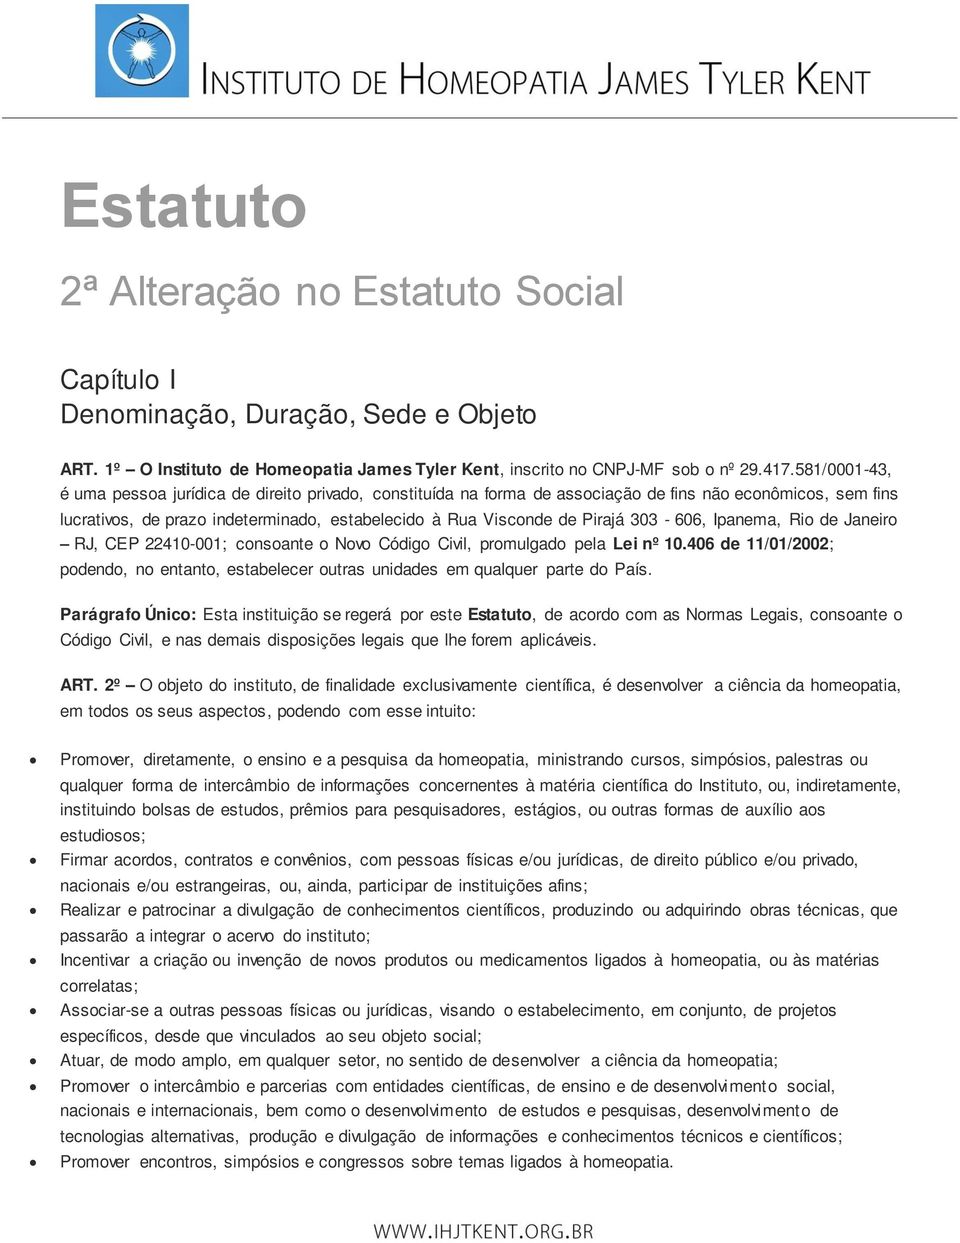 303-606, Ipanema, Rio de Janeiro RJ, CEP 22410-001; consoante o Novo Código Civil, promulgado pela Lei nº 10.